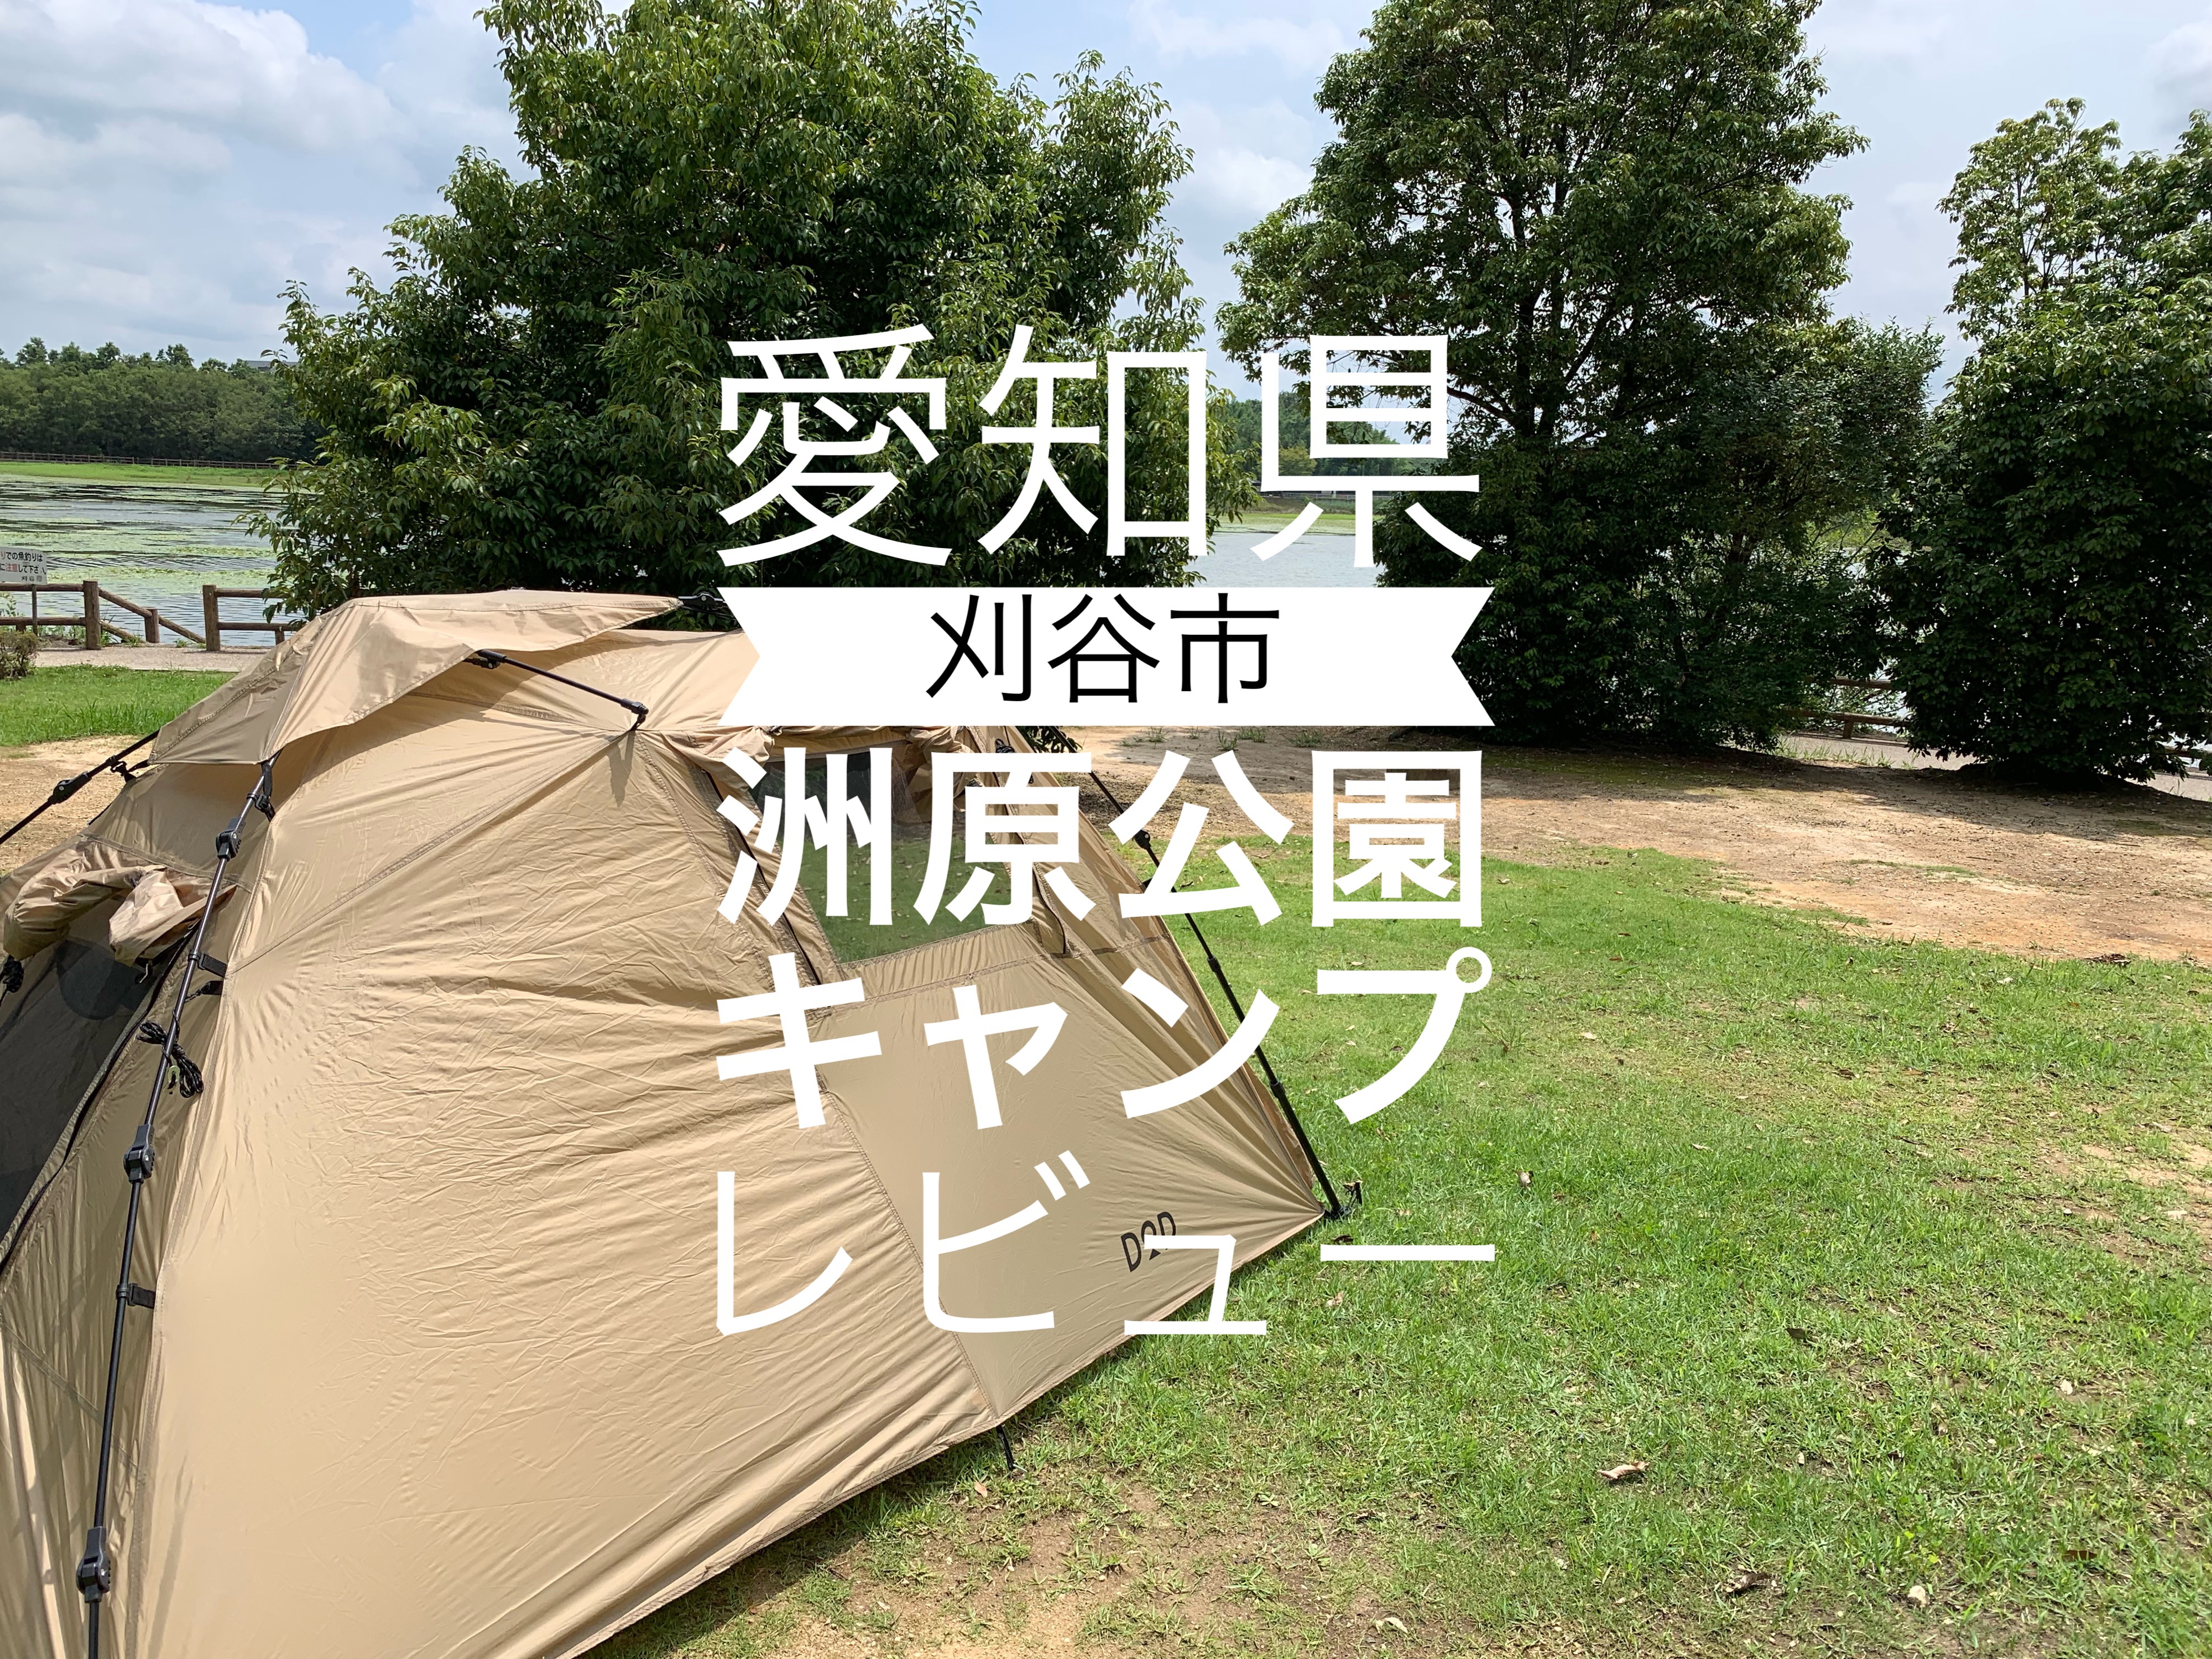 愛知県 刈谷市 無料なんて凄い 洲原公園デイキャンプ場ソロキャンプレビュー 浪費シンドローム